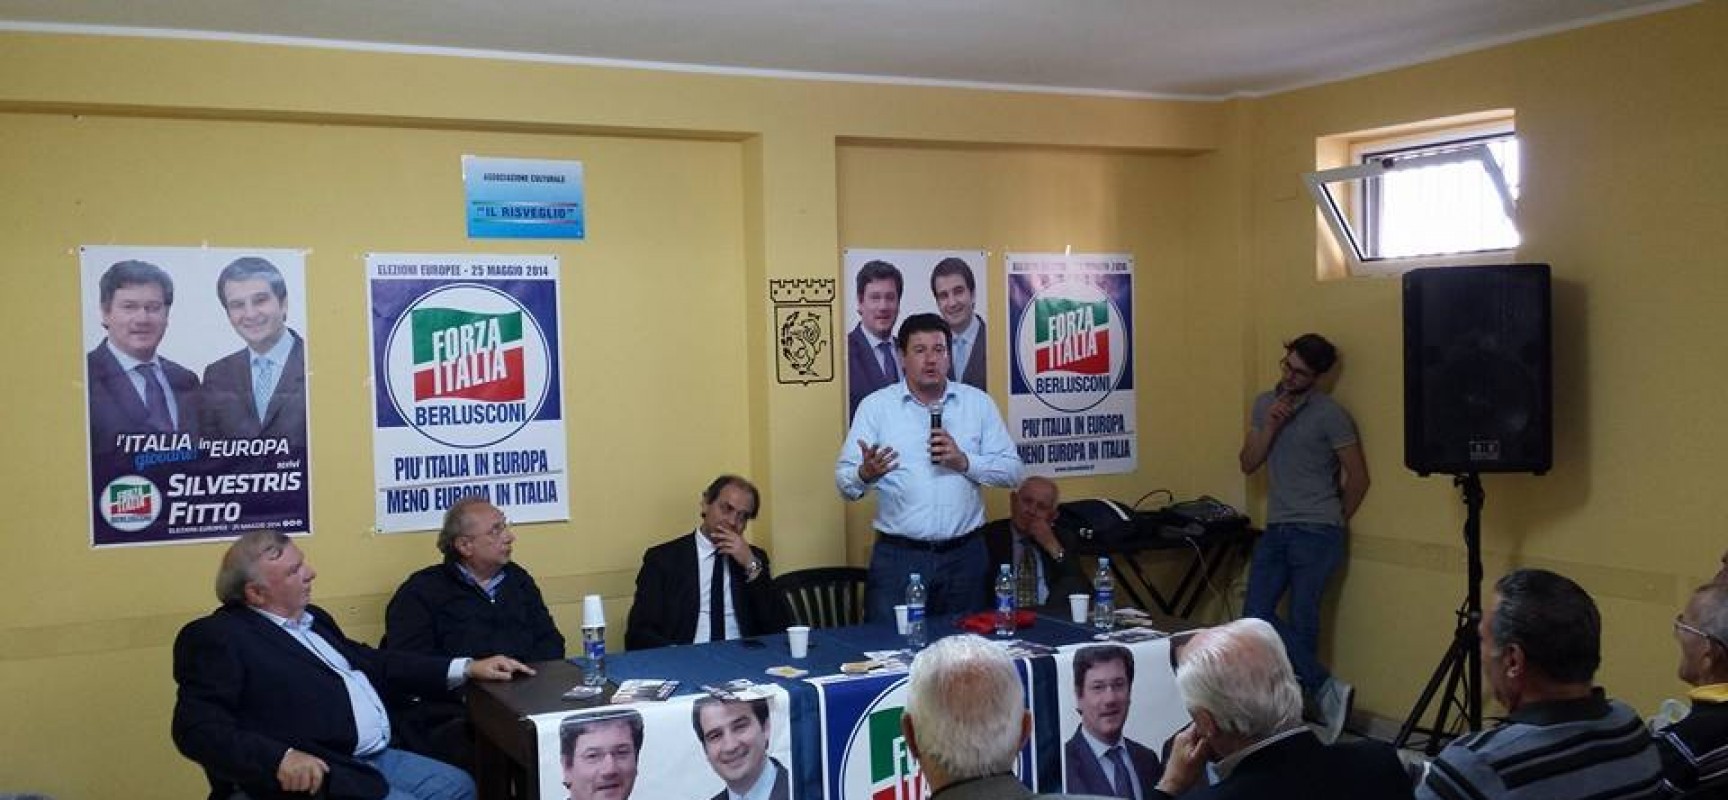 Il ringraziamento di Sergio Silvestris ai suoi elettori, conferenza stampa Sabato 31 alle ore 17.00 presso Hotel Salsello